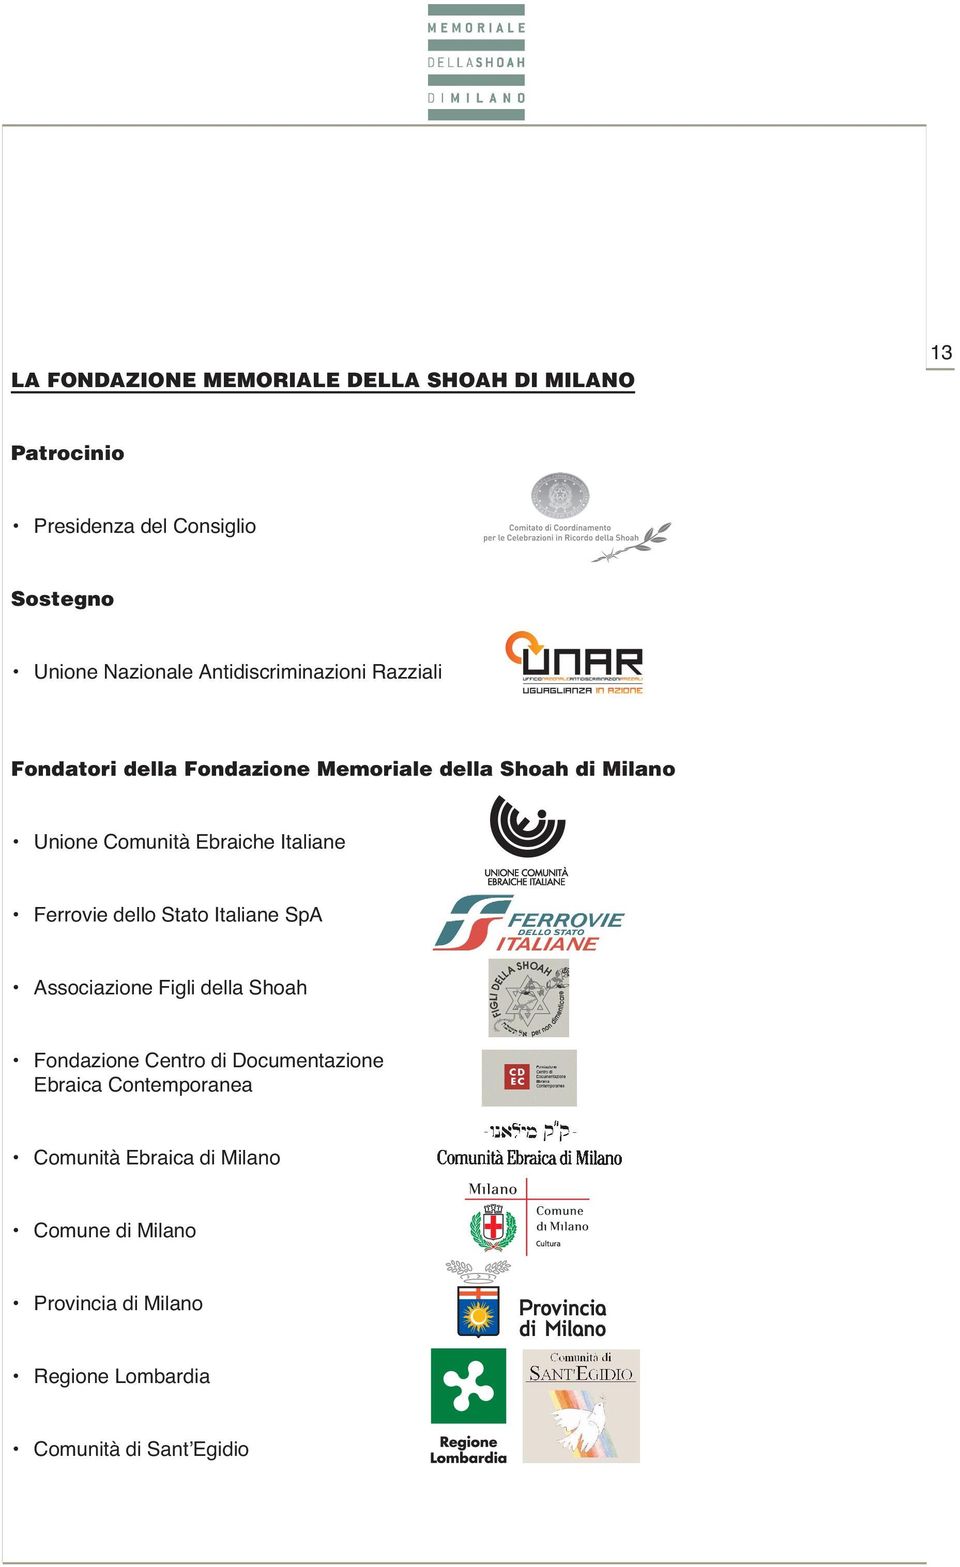 Italiane Ferrovie dello Stato Italiane SpA Associazione Figli della Shoah Fondazione Centro di Documentazione